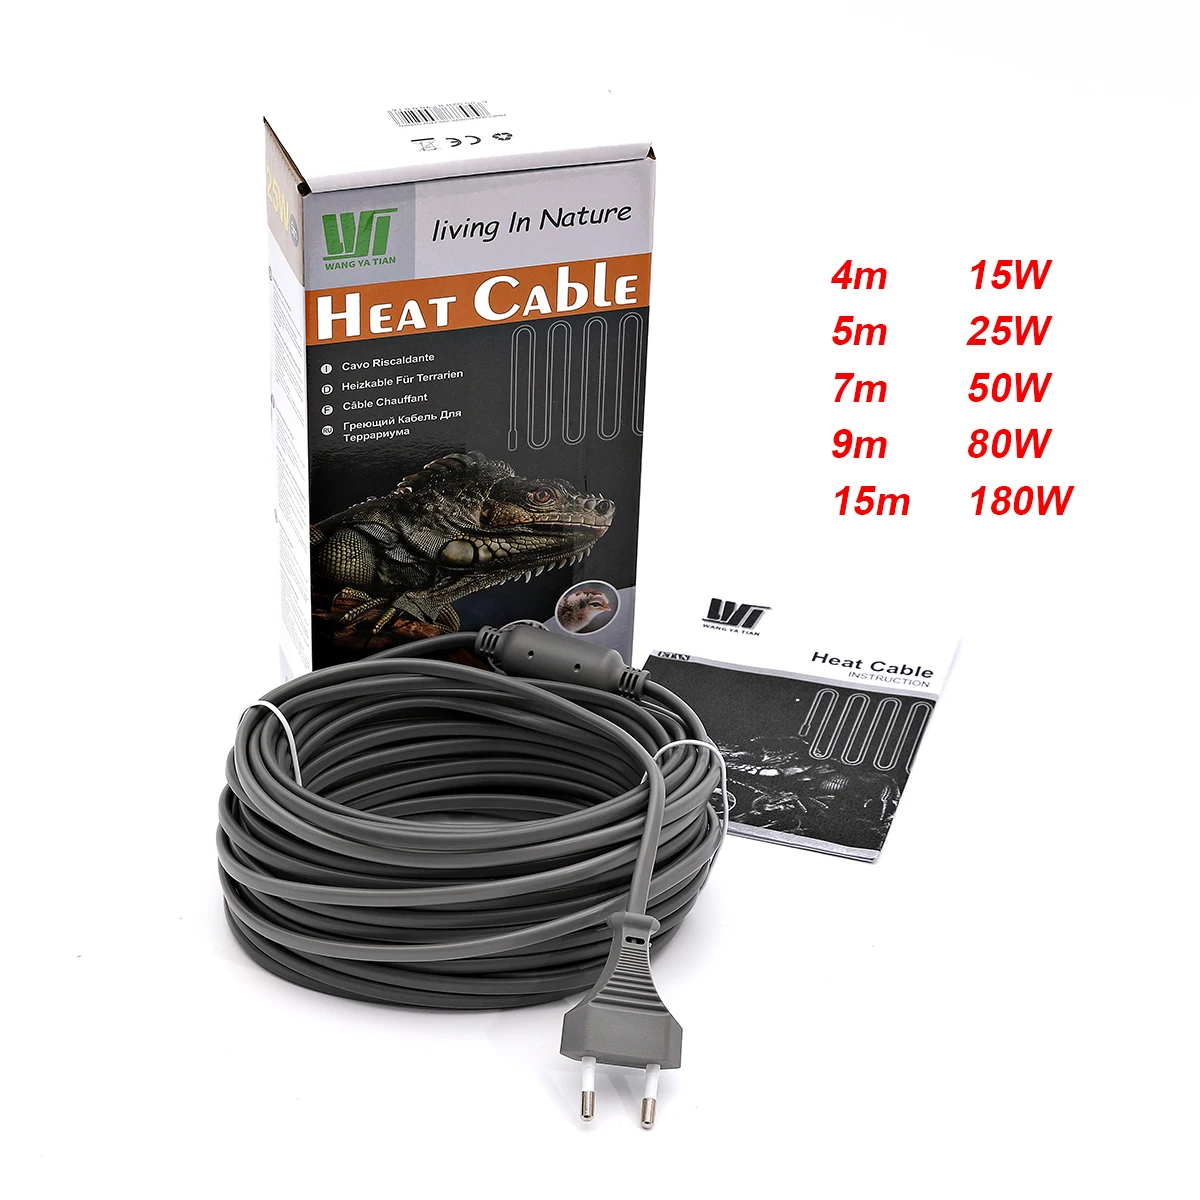 Cable de alimentación con enchufe europeo de 220V, Cable de calefacción autorregulado para